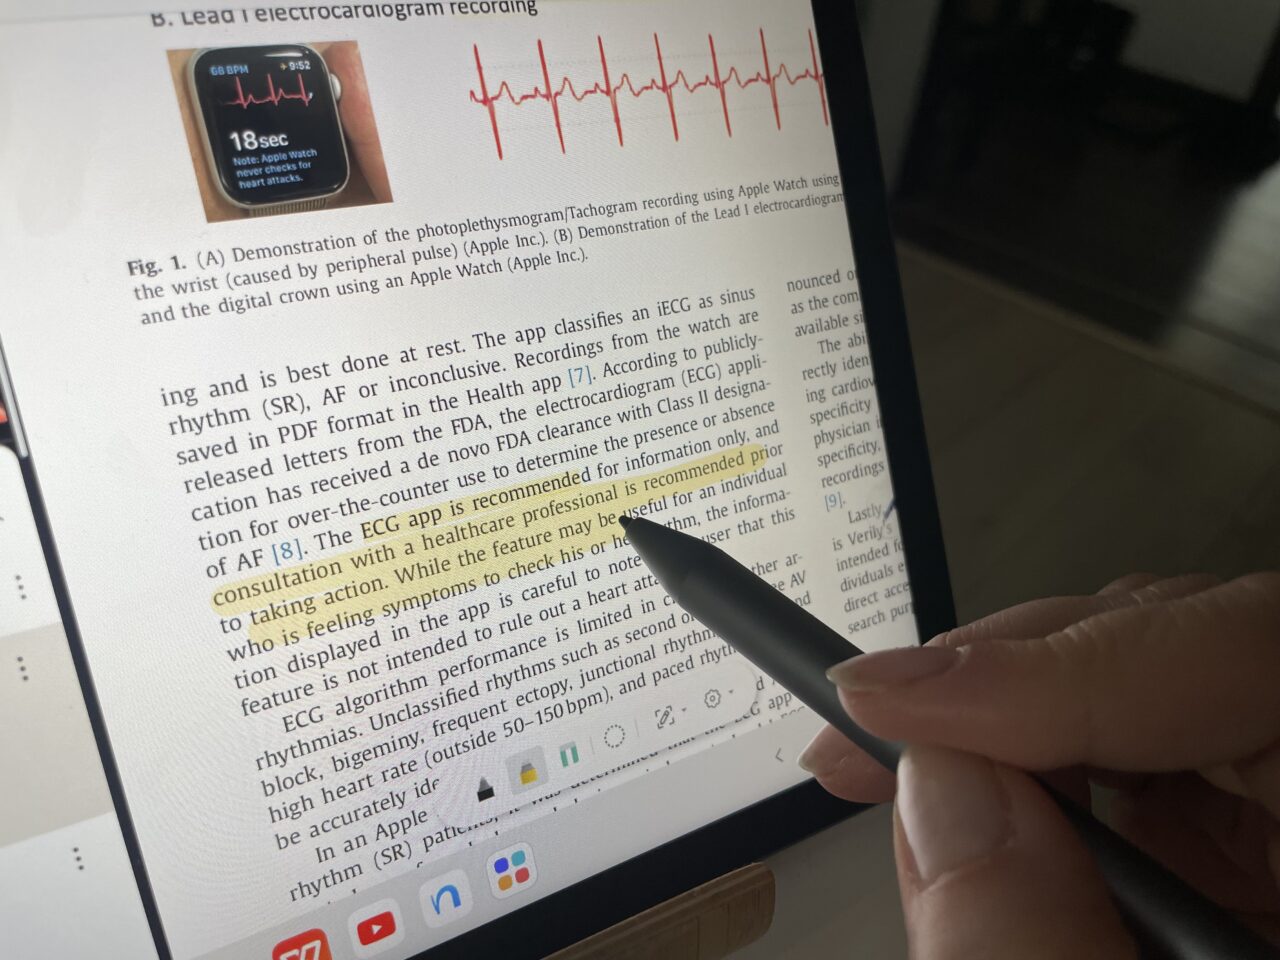 Osoba trzymająca długopis czyta naukowy artykuł na tablecie, na którym widać wykres elektrokardiogramu oraz fragment tekstu o aplikacji EKG w zegarku Apple Watch.